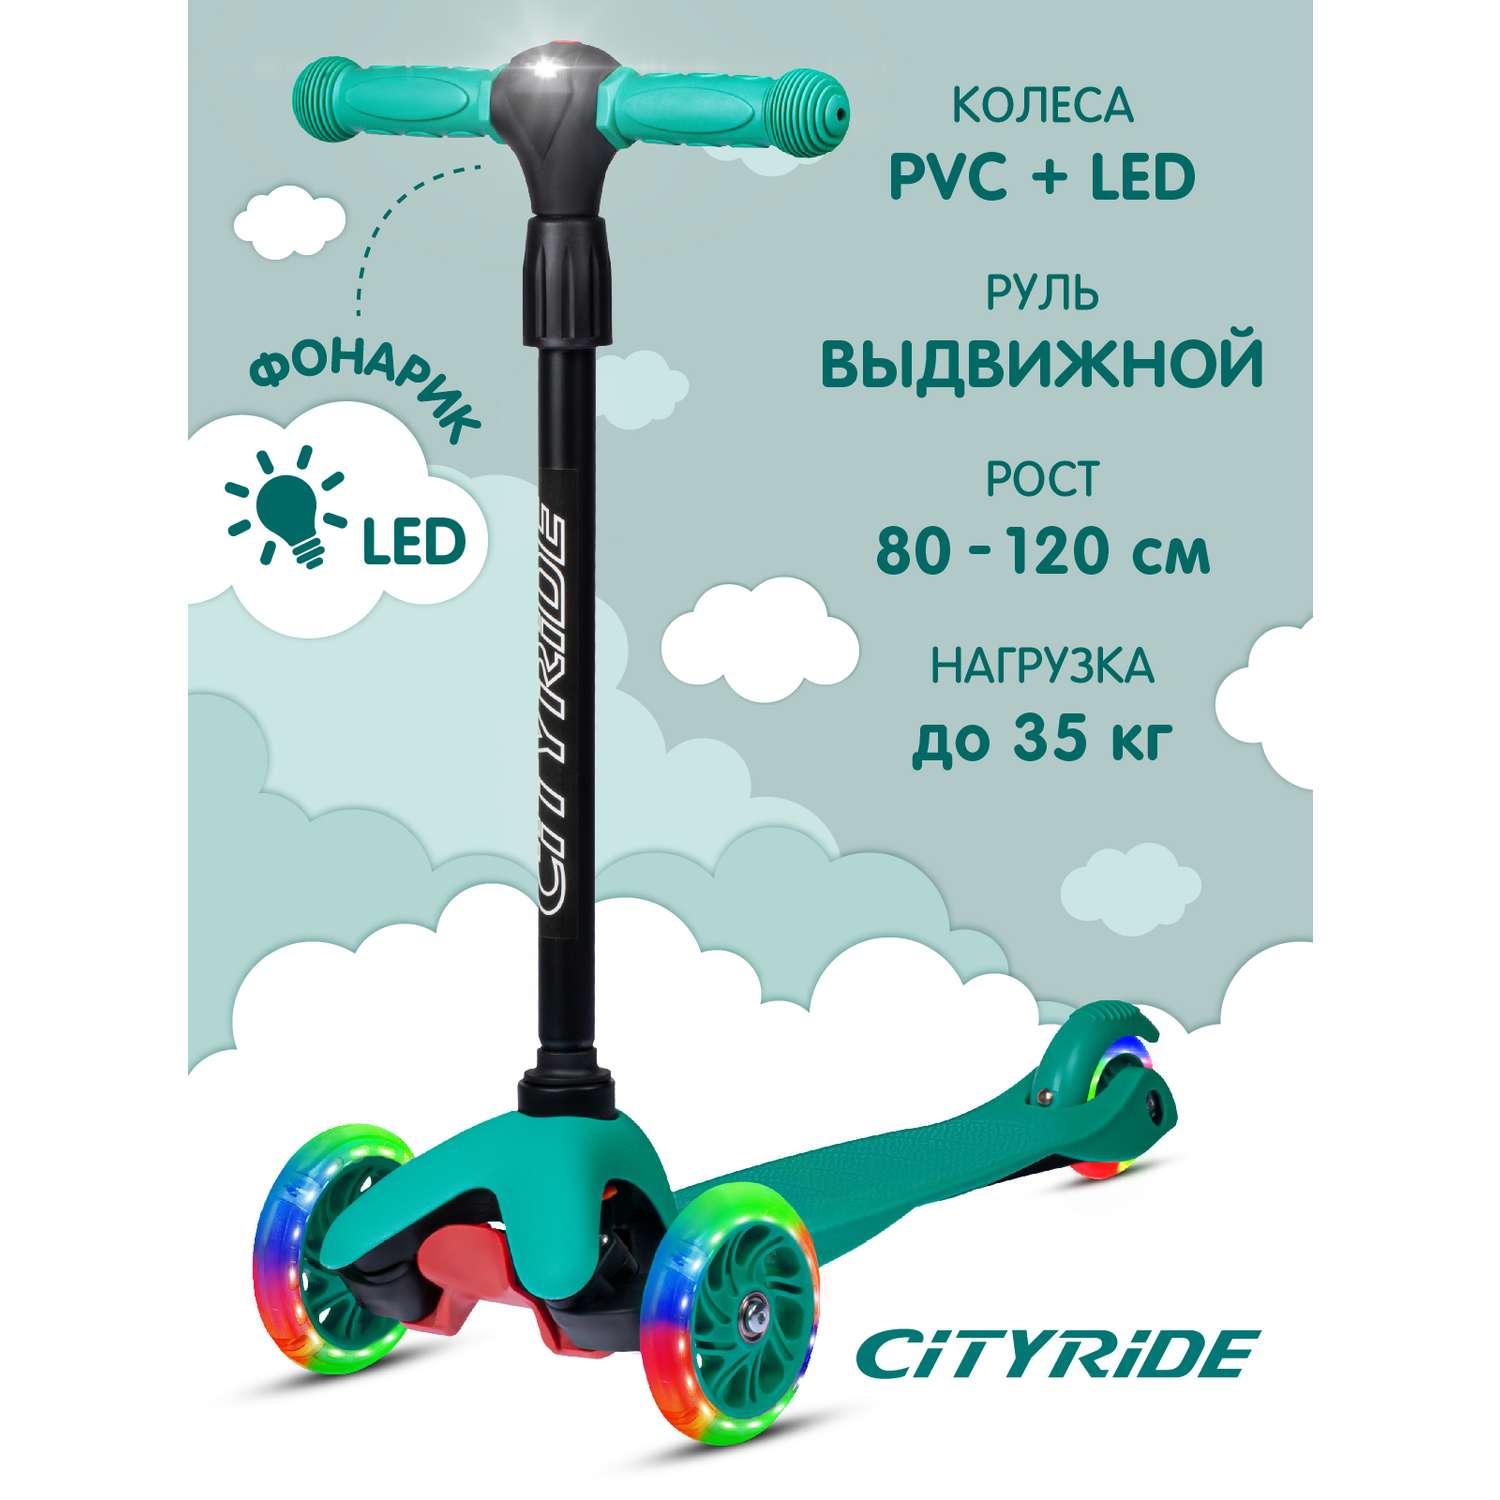 Самокат детский CITYRIDE трехколесный СityRide с телескопическим рулем с резиновой рукояткой и LED фонариком - фото 1